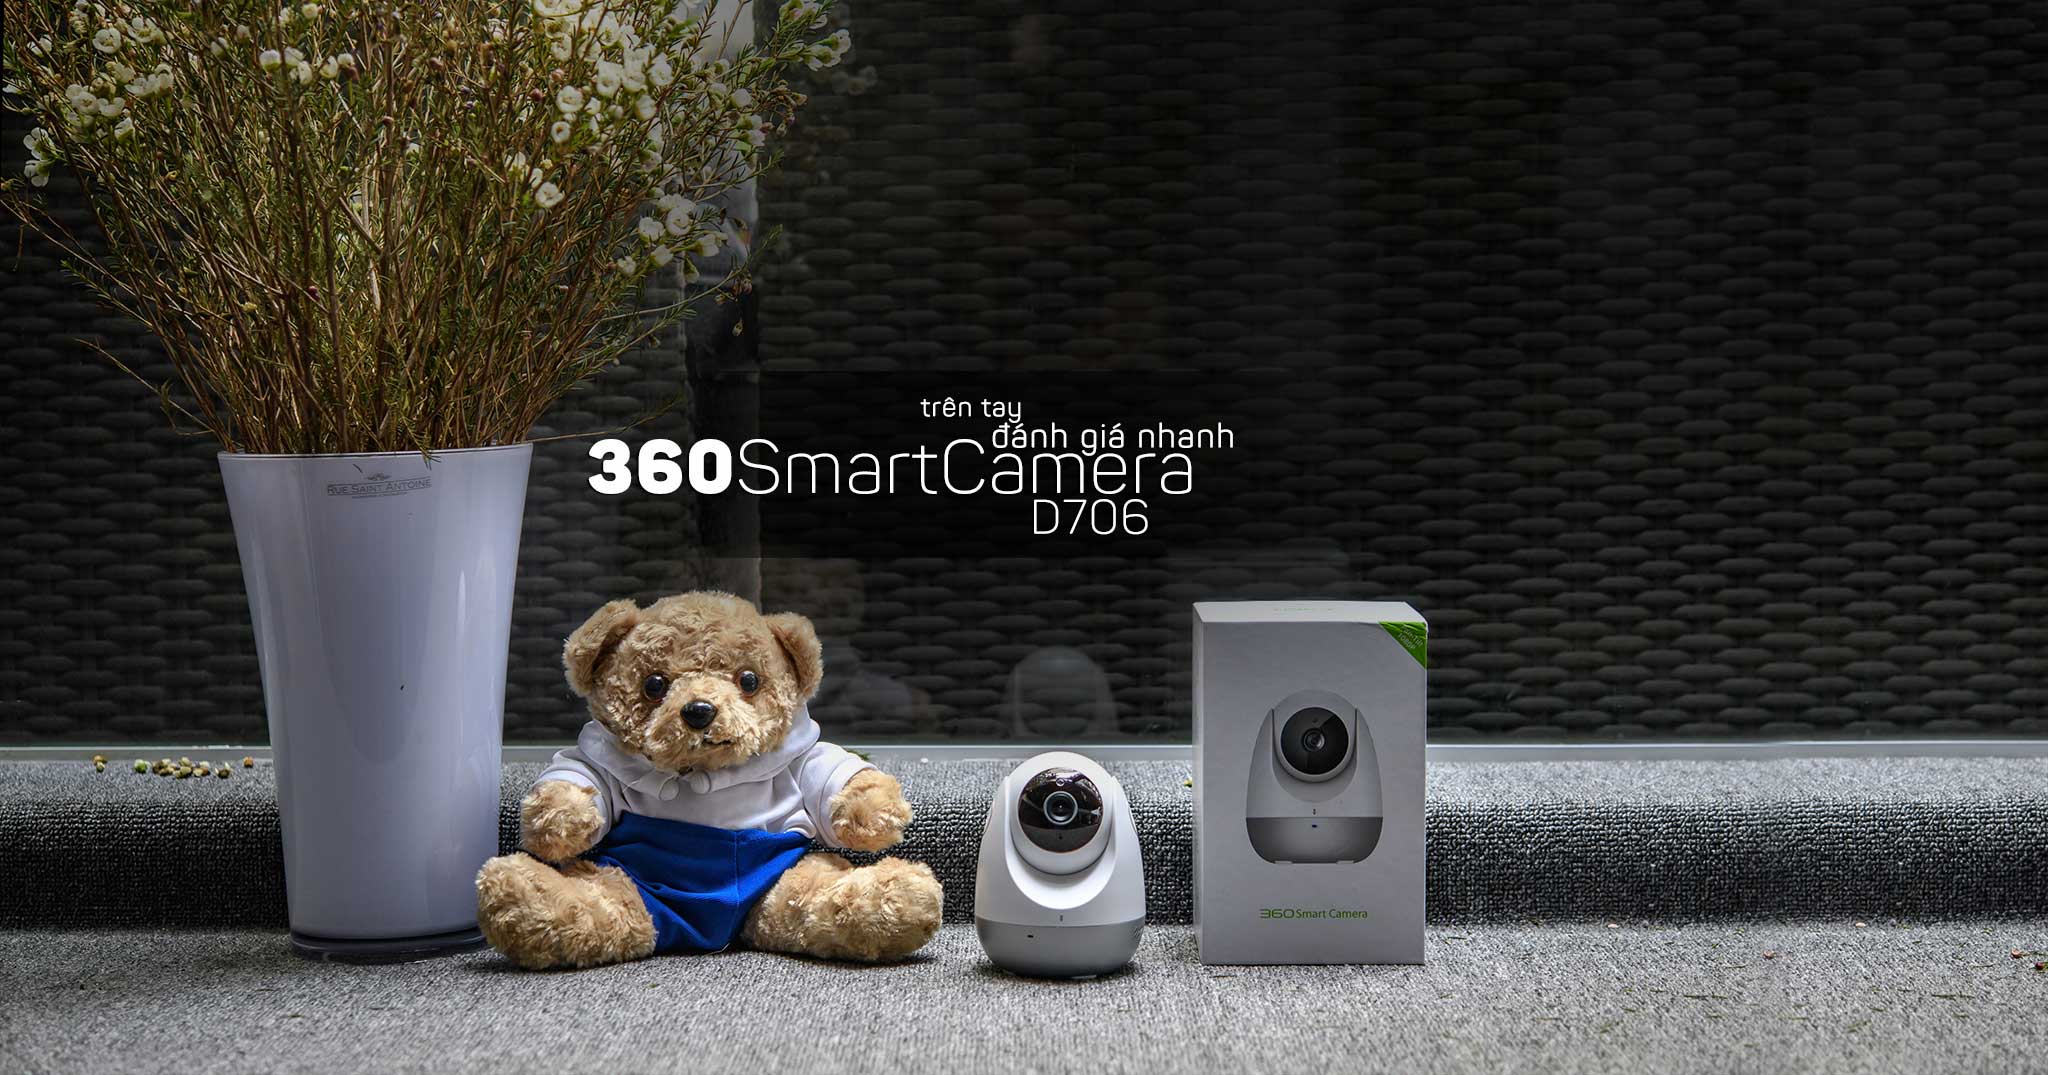 Trên tay và đánh giá camera quan sát 360SmartCamera: Dễ lắp đặt, chất lượng chưa tốt [HOT]